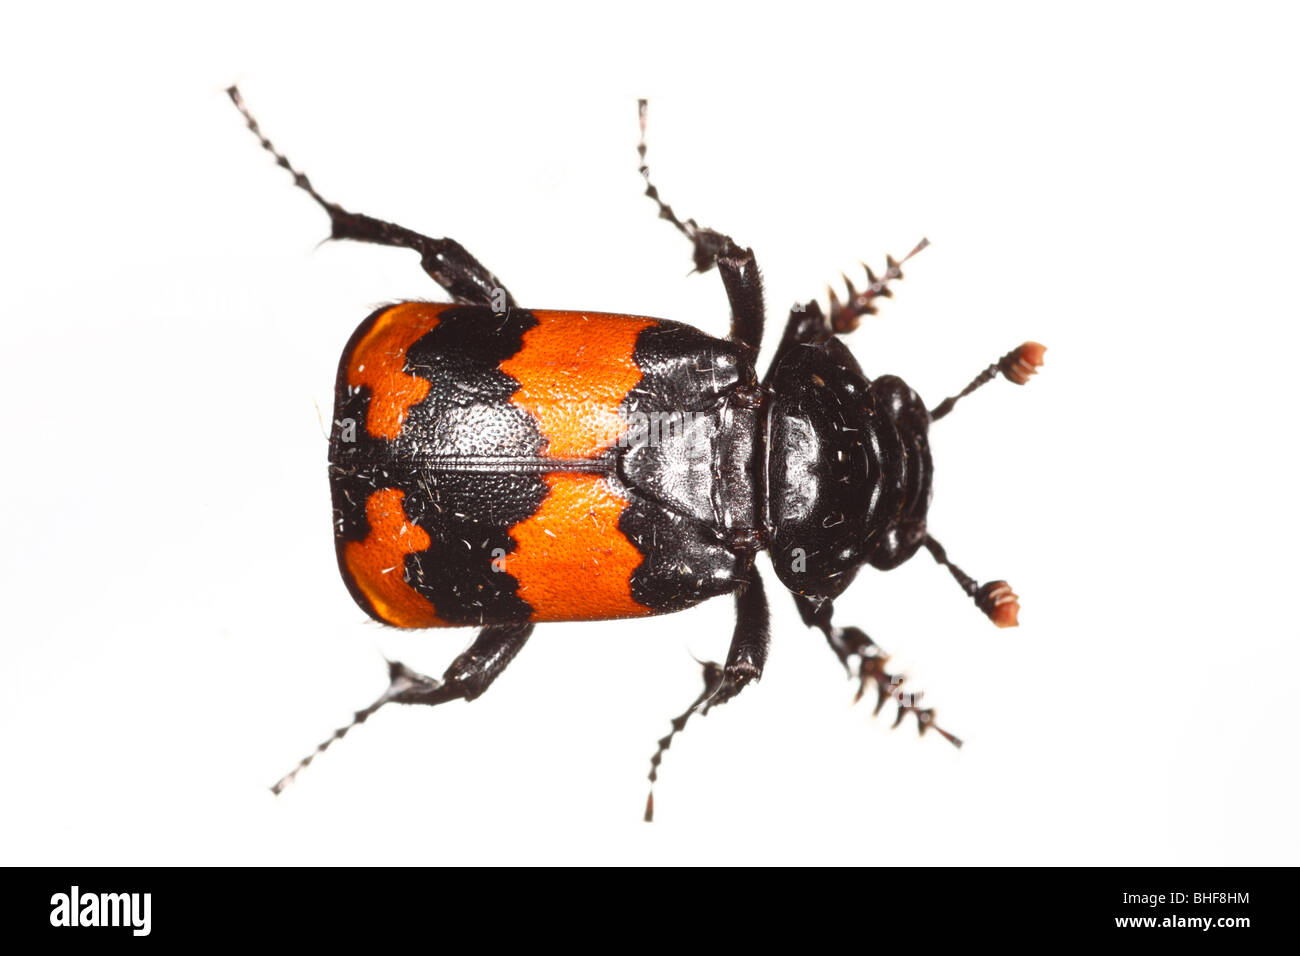 D'enfouir ou Sexton beetle (Nicrophorus investigator). Insecte photographié sur un fond blanc sur un studio portable. Banque D'Images